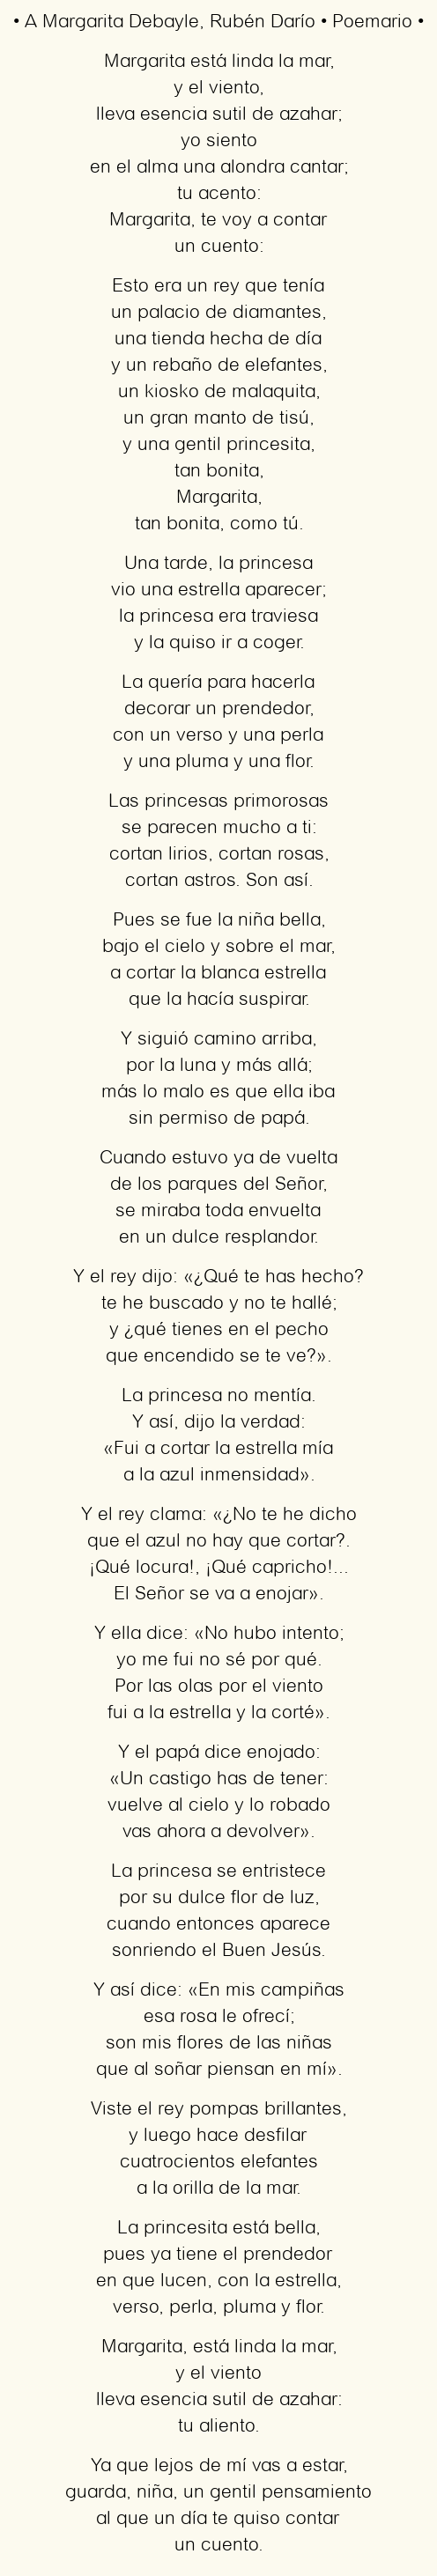 A Margarita Debayle: el poema que cautiva al corazón con sus letras